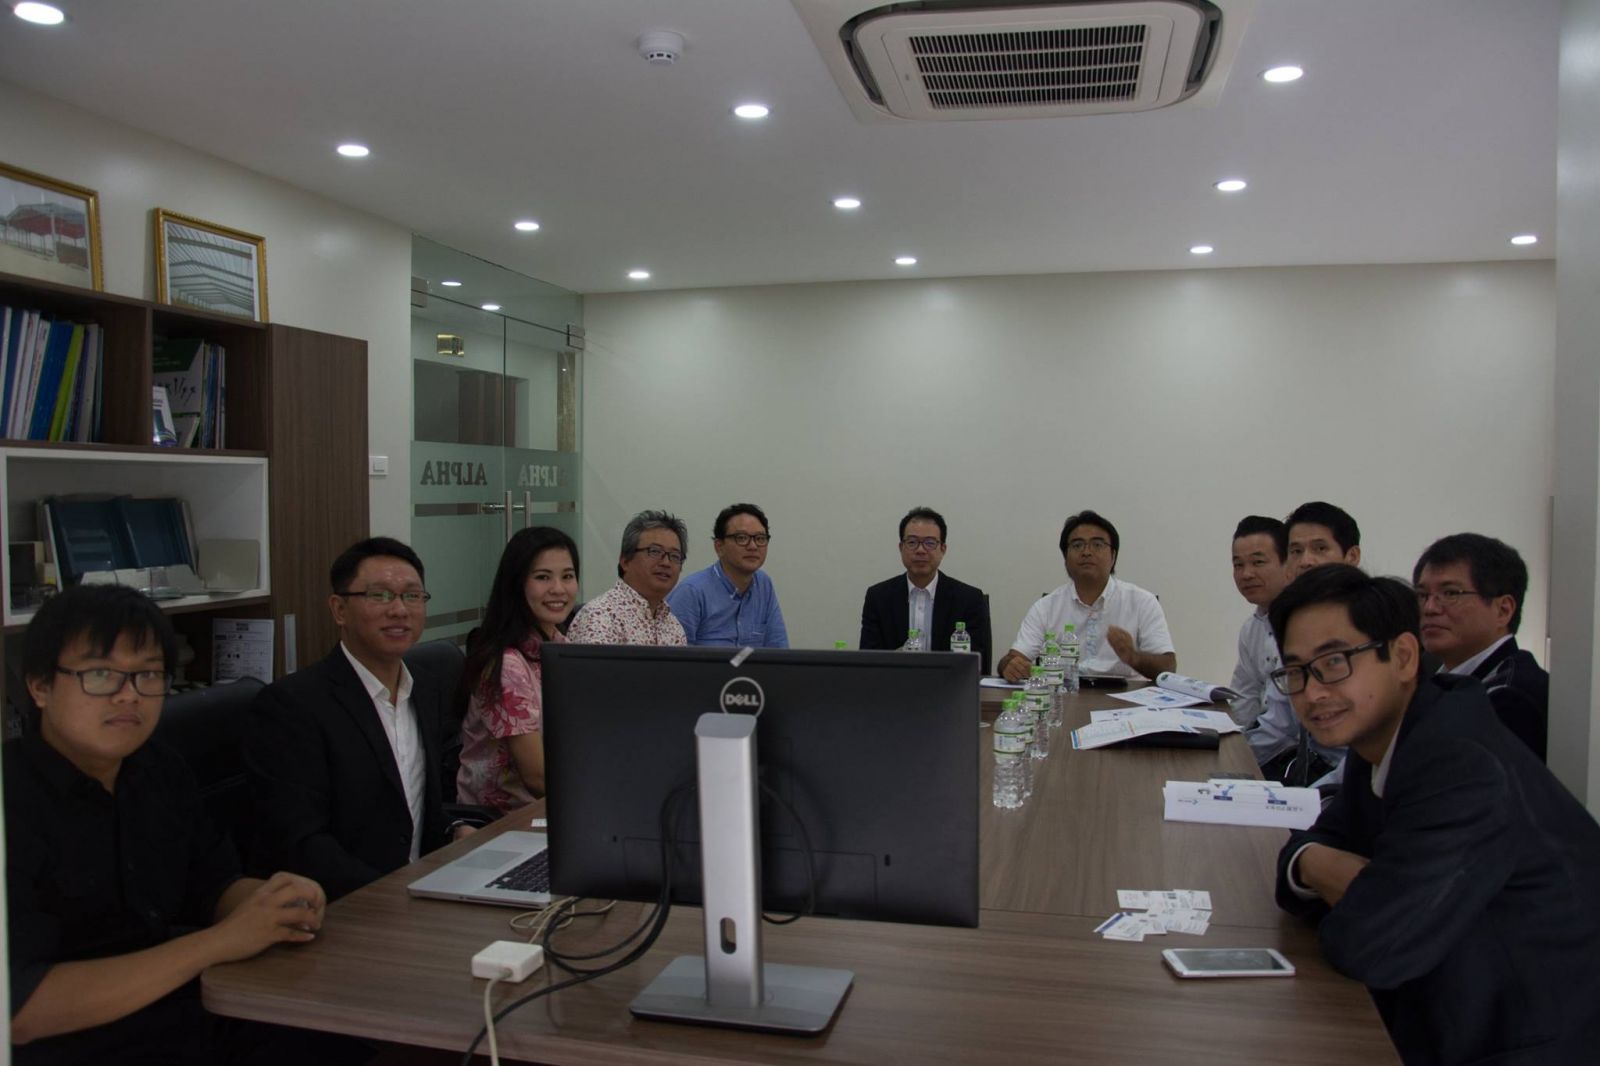 SotaTek-team-welcomes-business-delegation-from-Okinawa